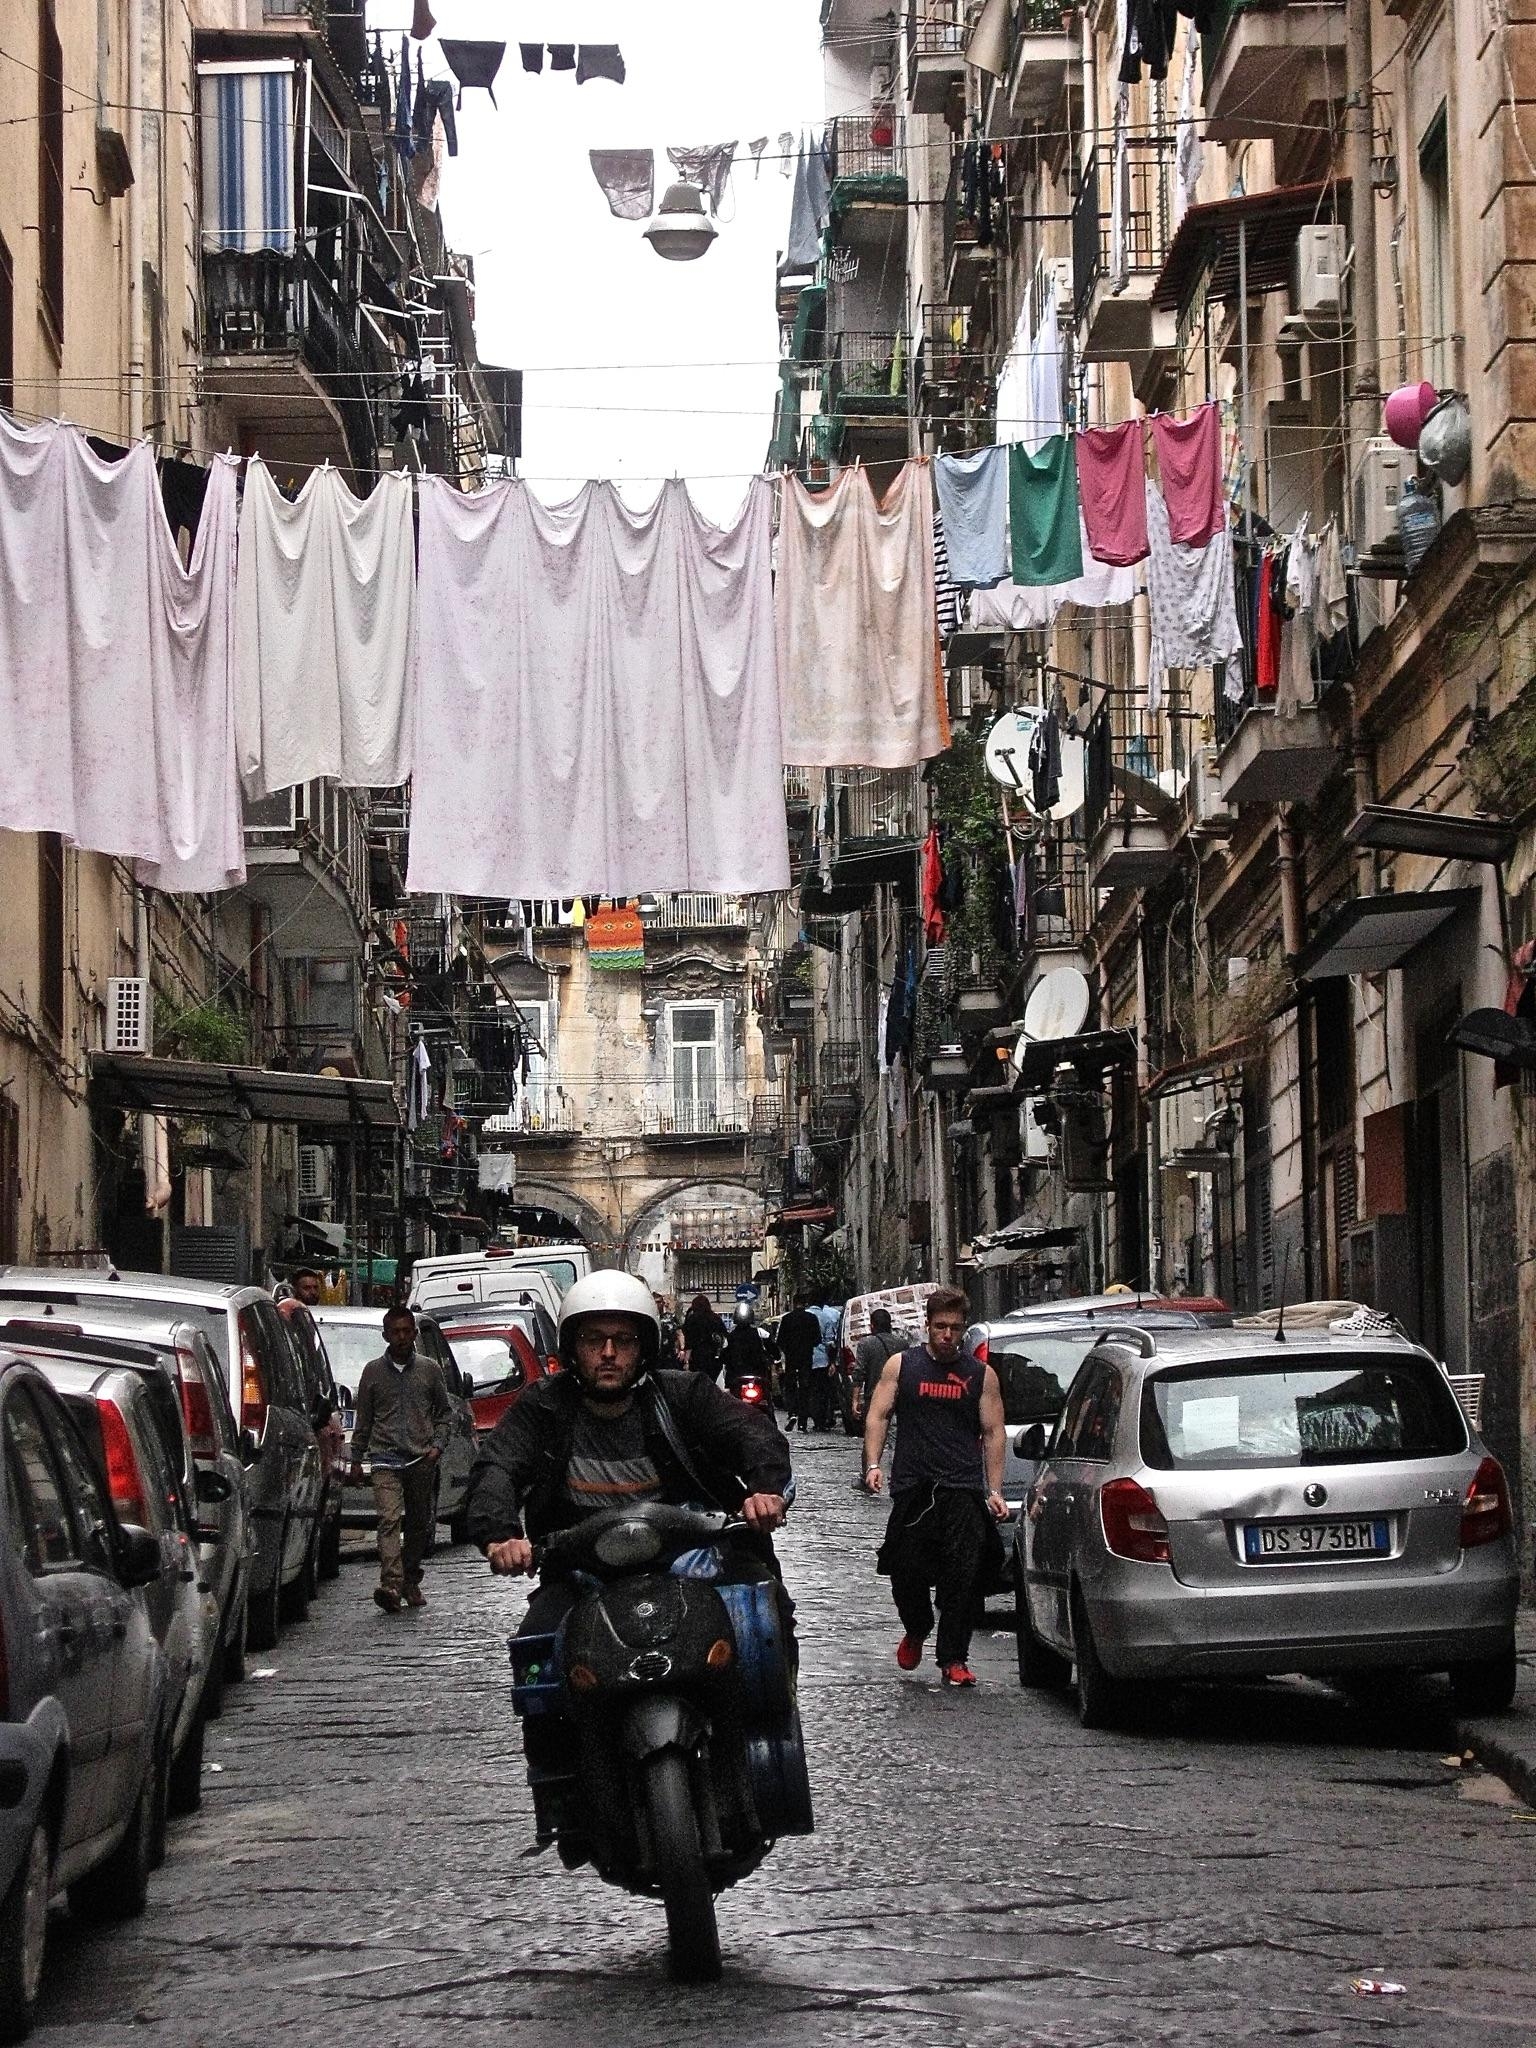 Napoli❤️
#travelchallenge #städtetrip #neapel #italien